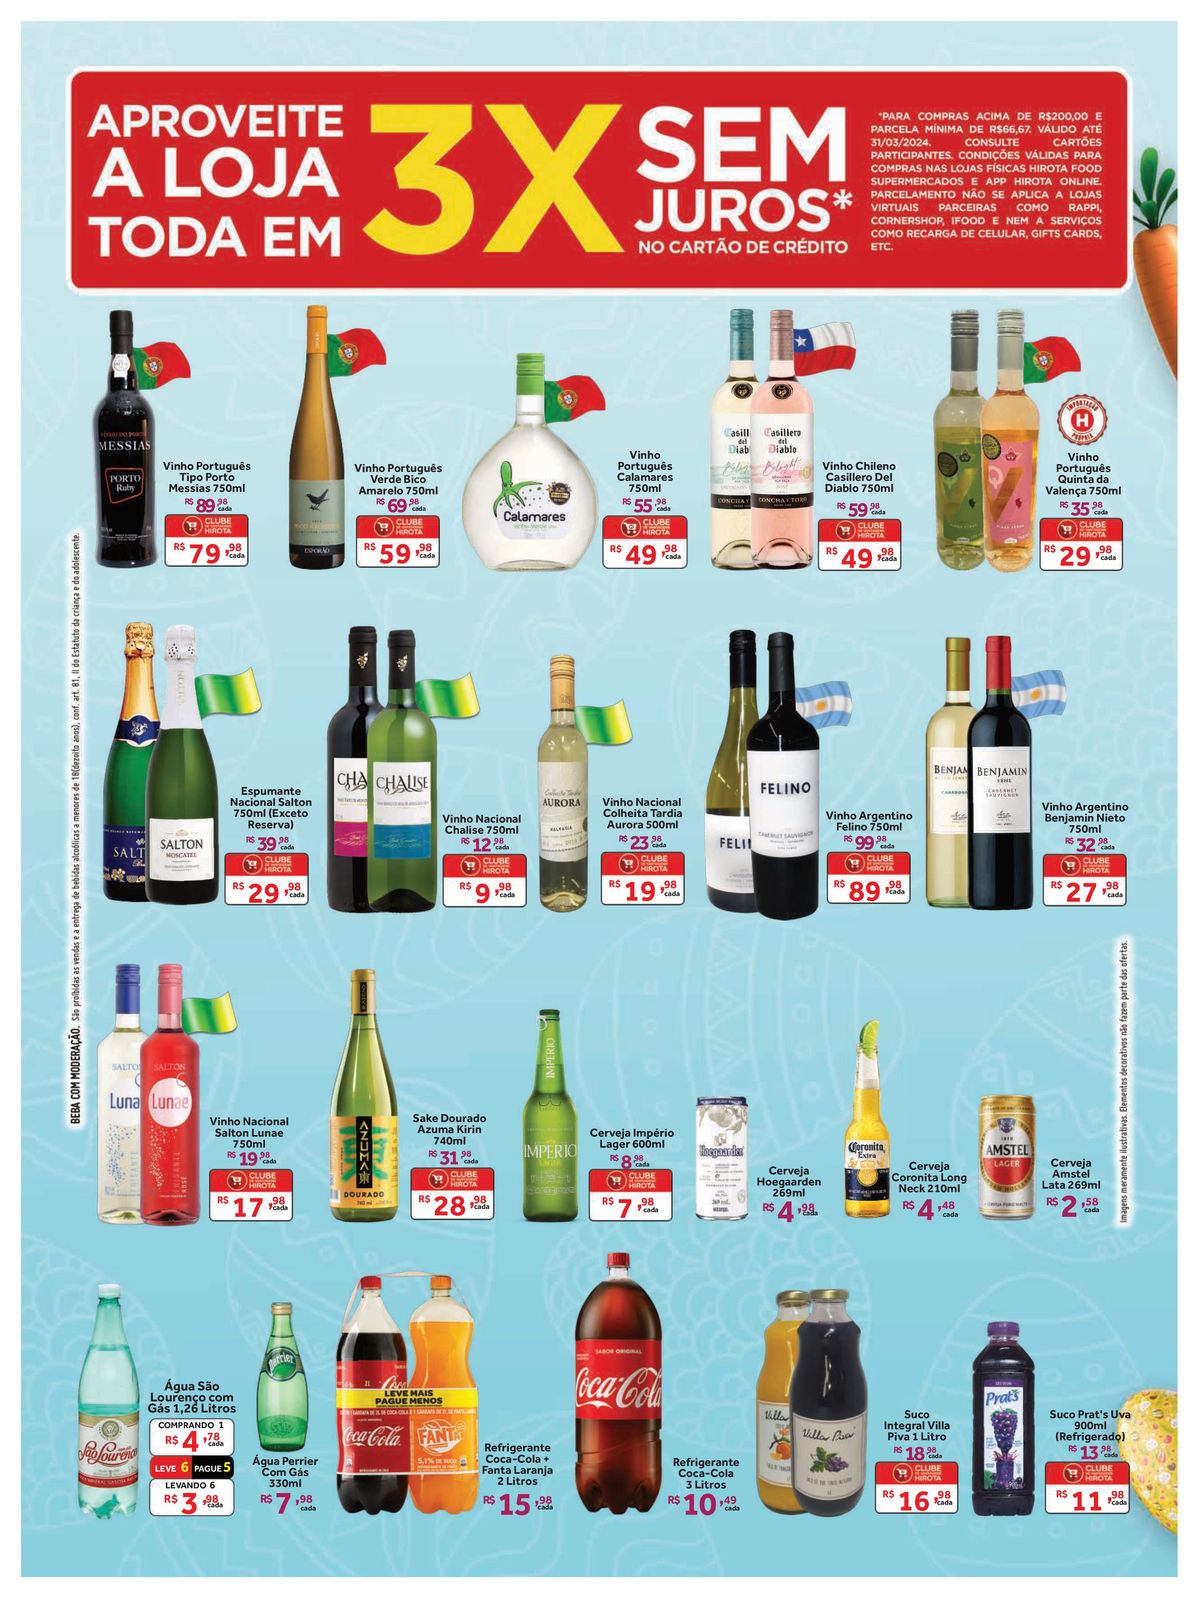 Ofertas em bebidas alcoólicas: Vinhos, Espumantes e Cervejas